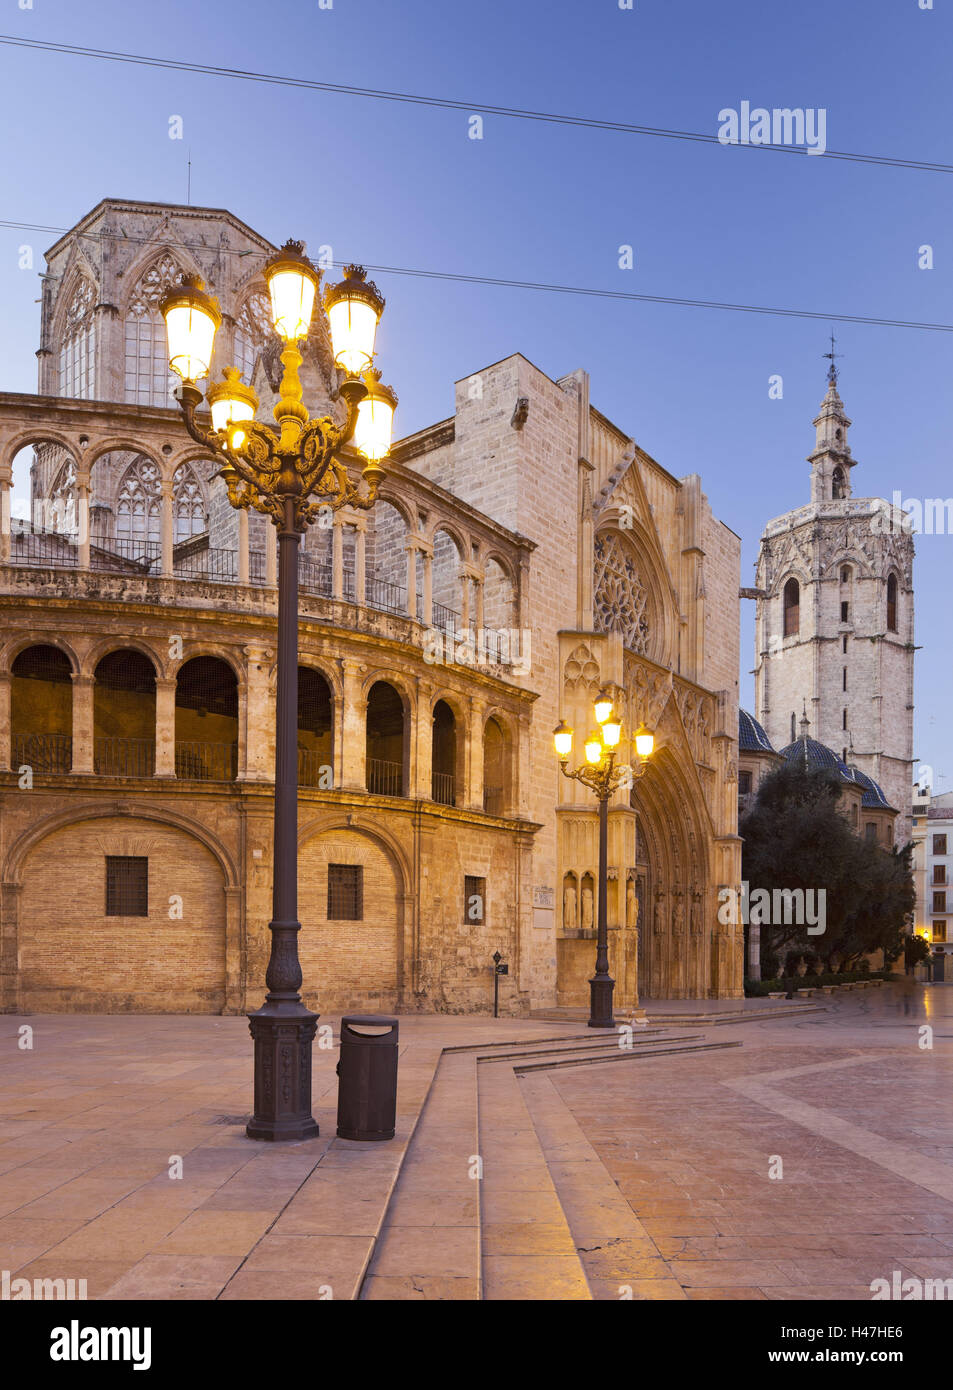 Spagna, Valencia, Plaza de la Virgen, Catedral de Santa María de Valencia, lanterna, Foto Stock